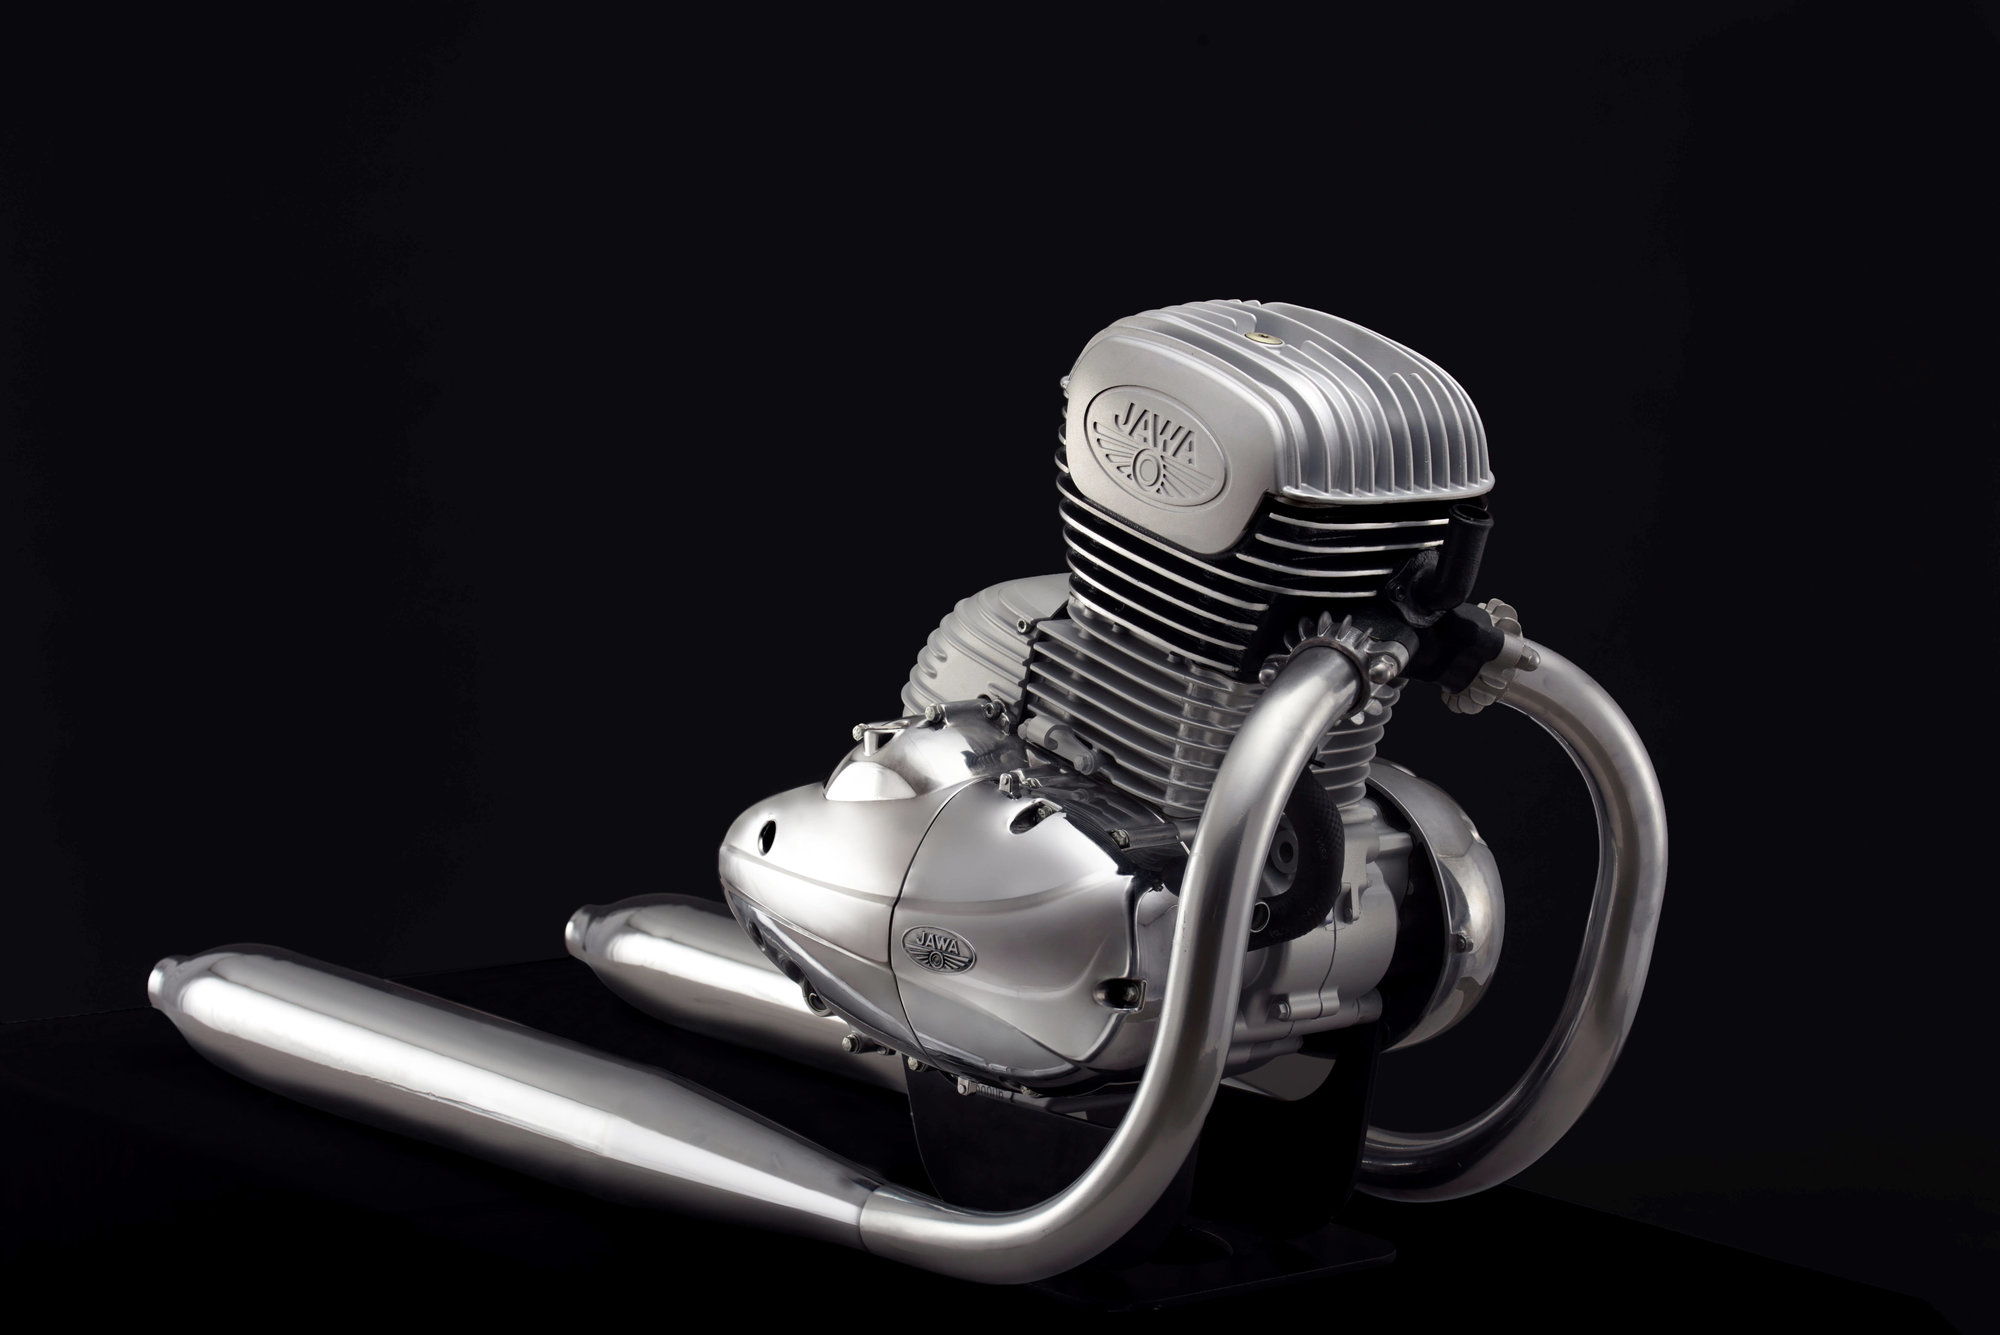 Nový motor připravený pro nové motocykly JAWA 300